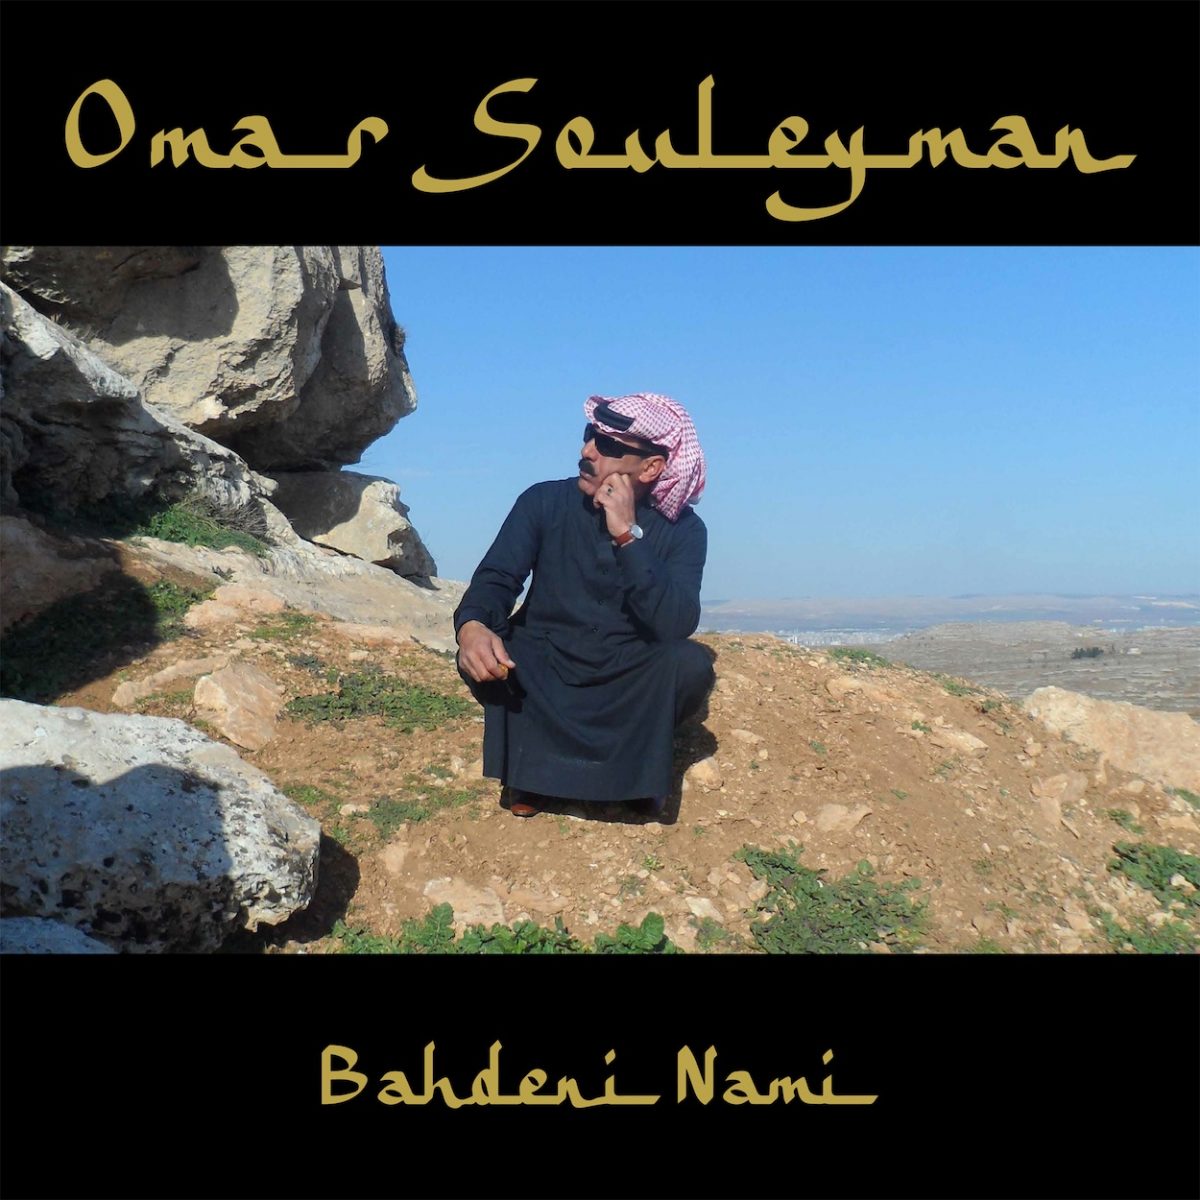 Omar Souleyman - Bahdeni Nami 2LP